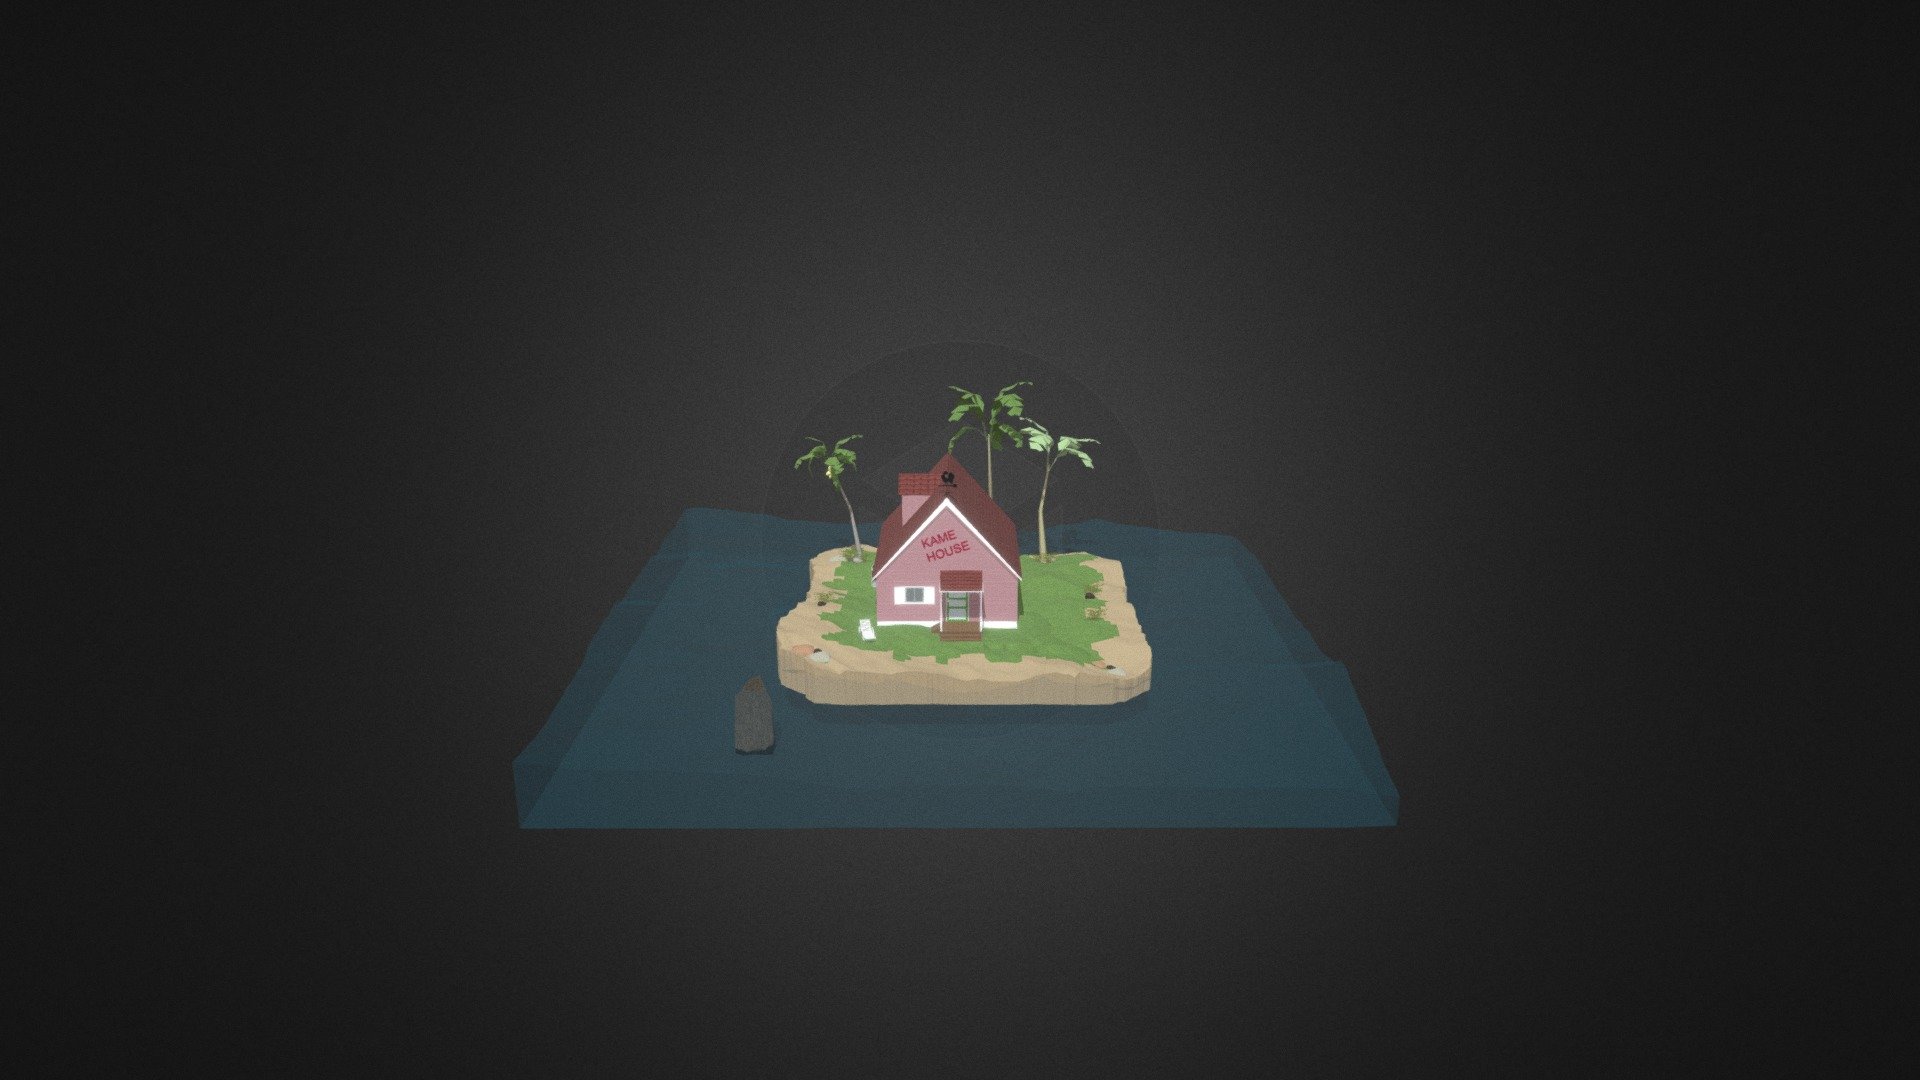 La Casa Kame (カメハウス, Kame Hausu, Kame House) o Casa de la Tortuga, es una casa pequeña que se encuentra en una isla en el medio del océano. 

visit our website: www.hellpatrolstudios.com - Kame House - 3D model by hellpatrolstudios 3d model